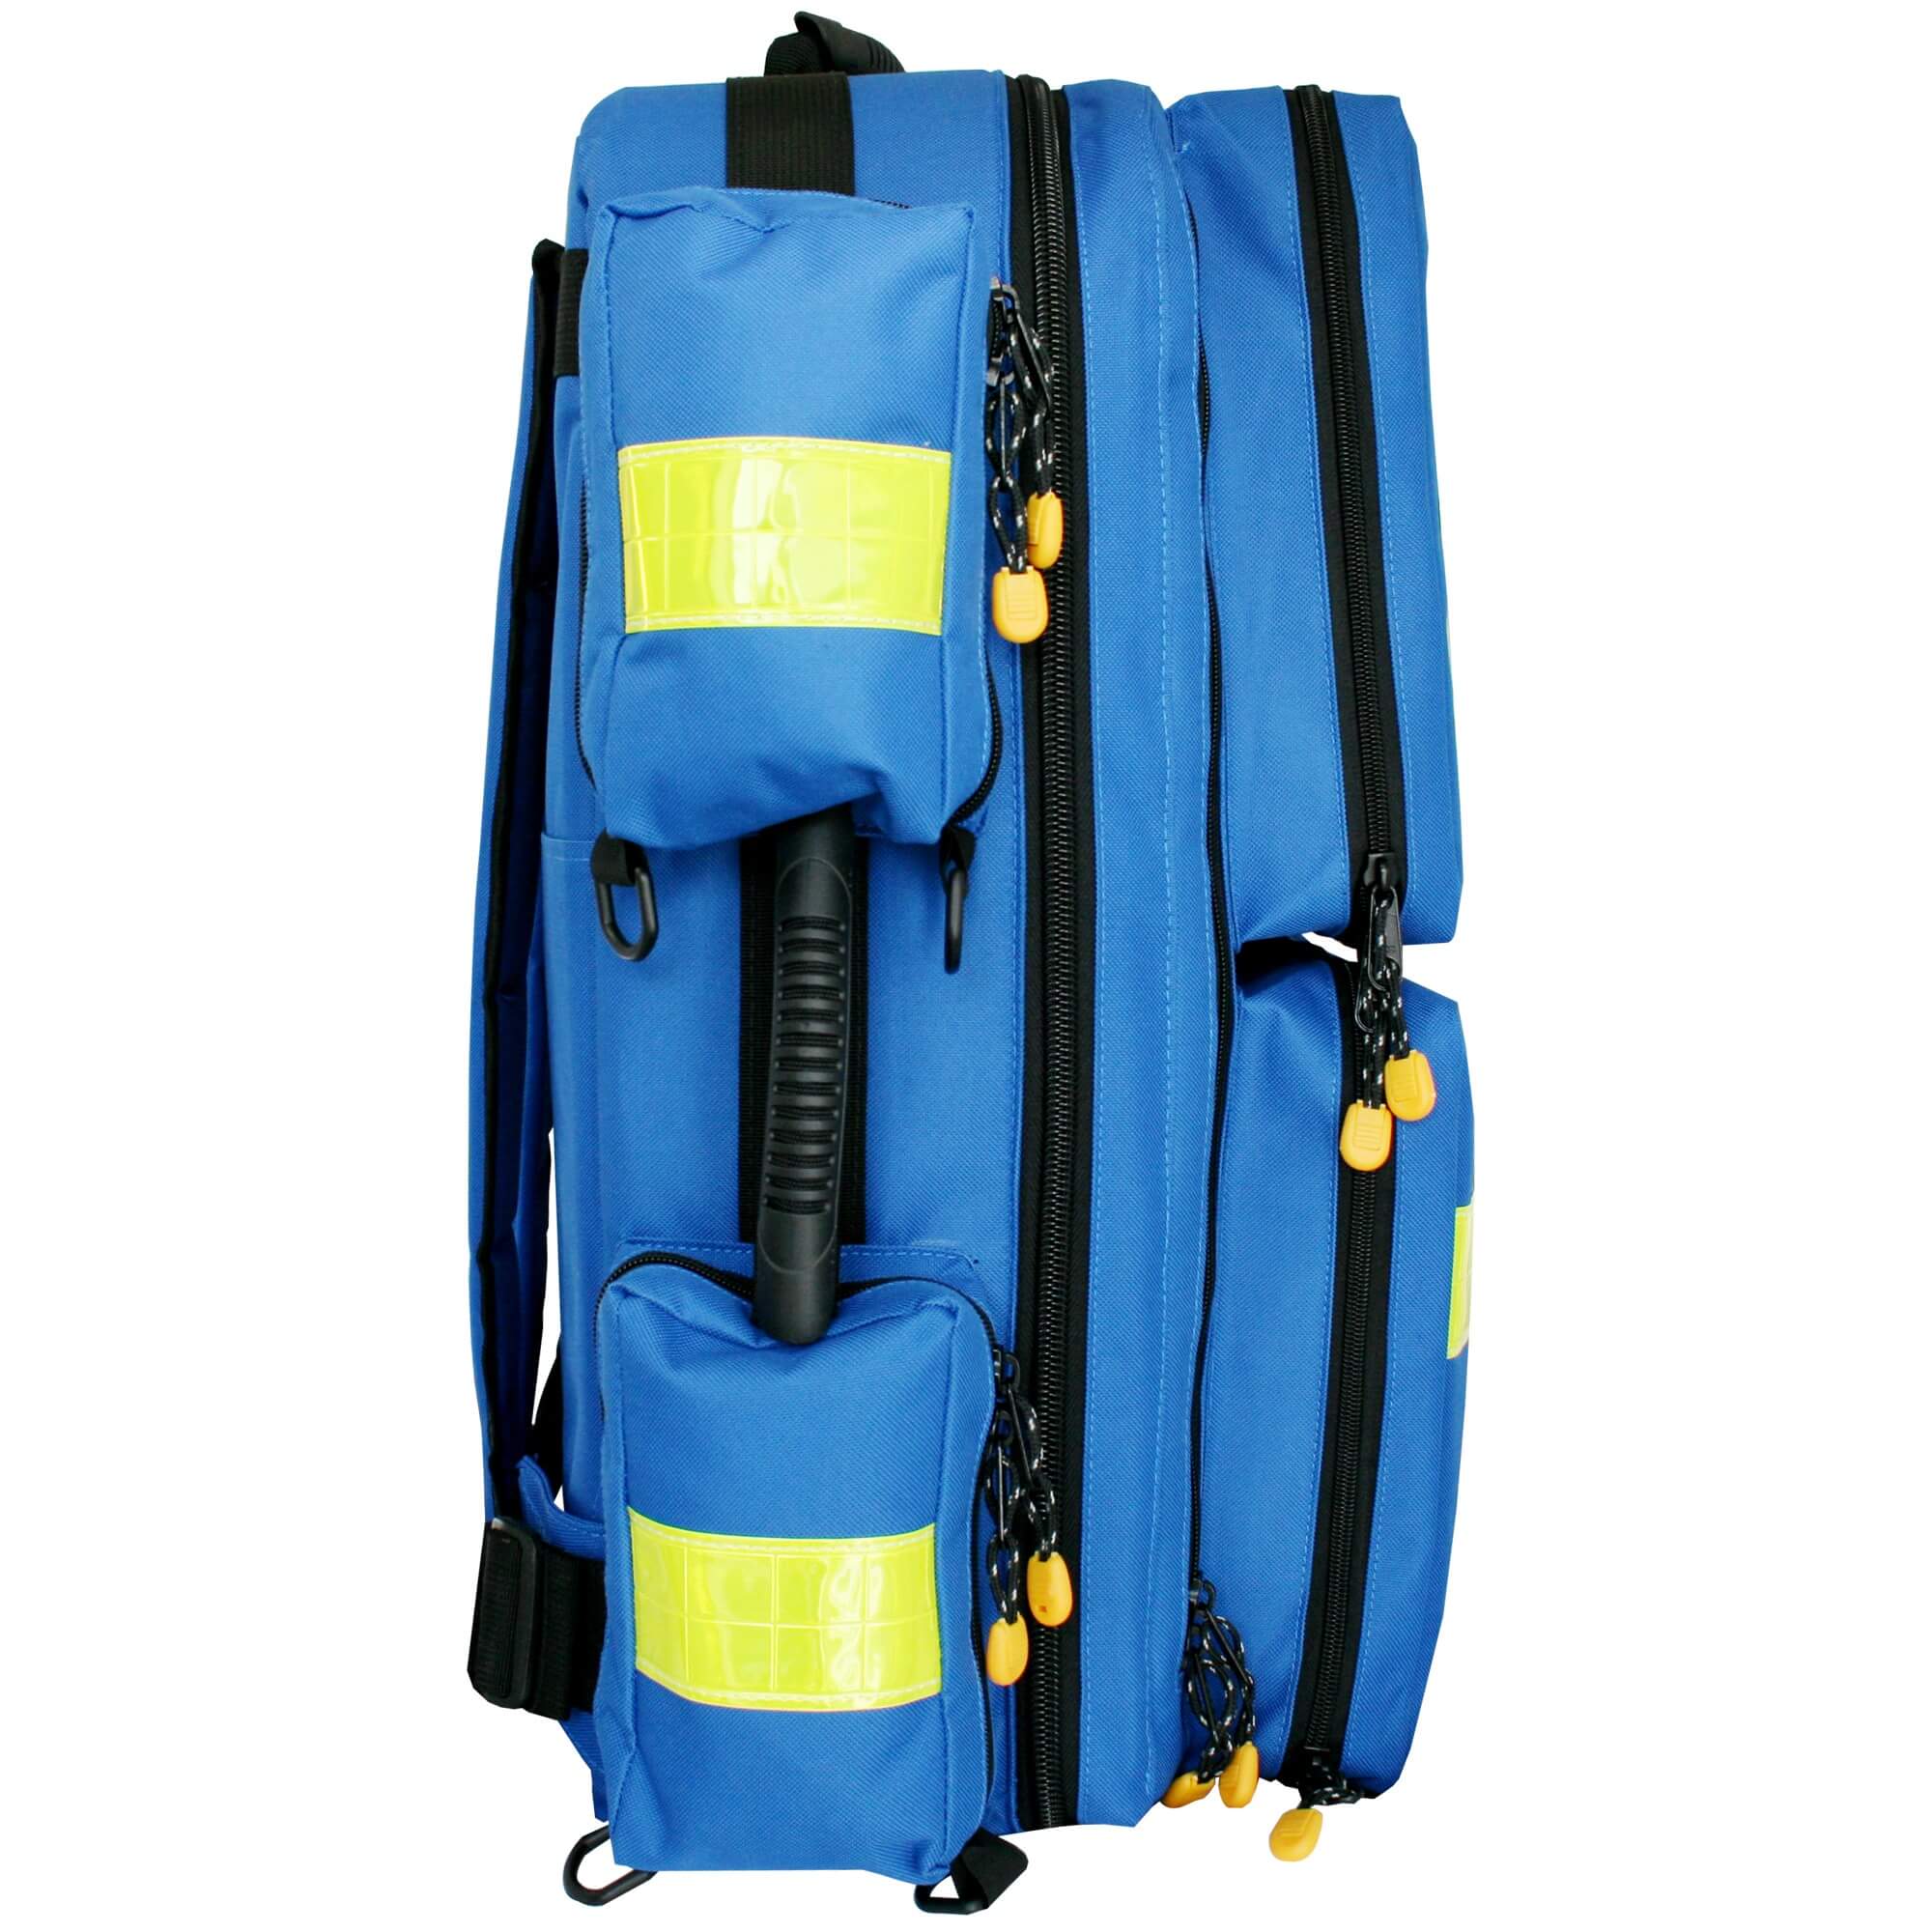 Notfallrucksack MEDICUS XL Blau Nylon 65 x 42 x 23 cm 65 L Volumen.Rettungsrucksack mit Schnellverschlussgurt zur Stabilisierung, gepolsterten Trageriemen sowie gepolstertem Taschenrücken, 2 Tragegriffe für individuellen Einsatz.Sanismart.